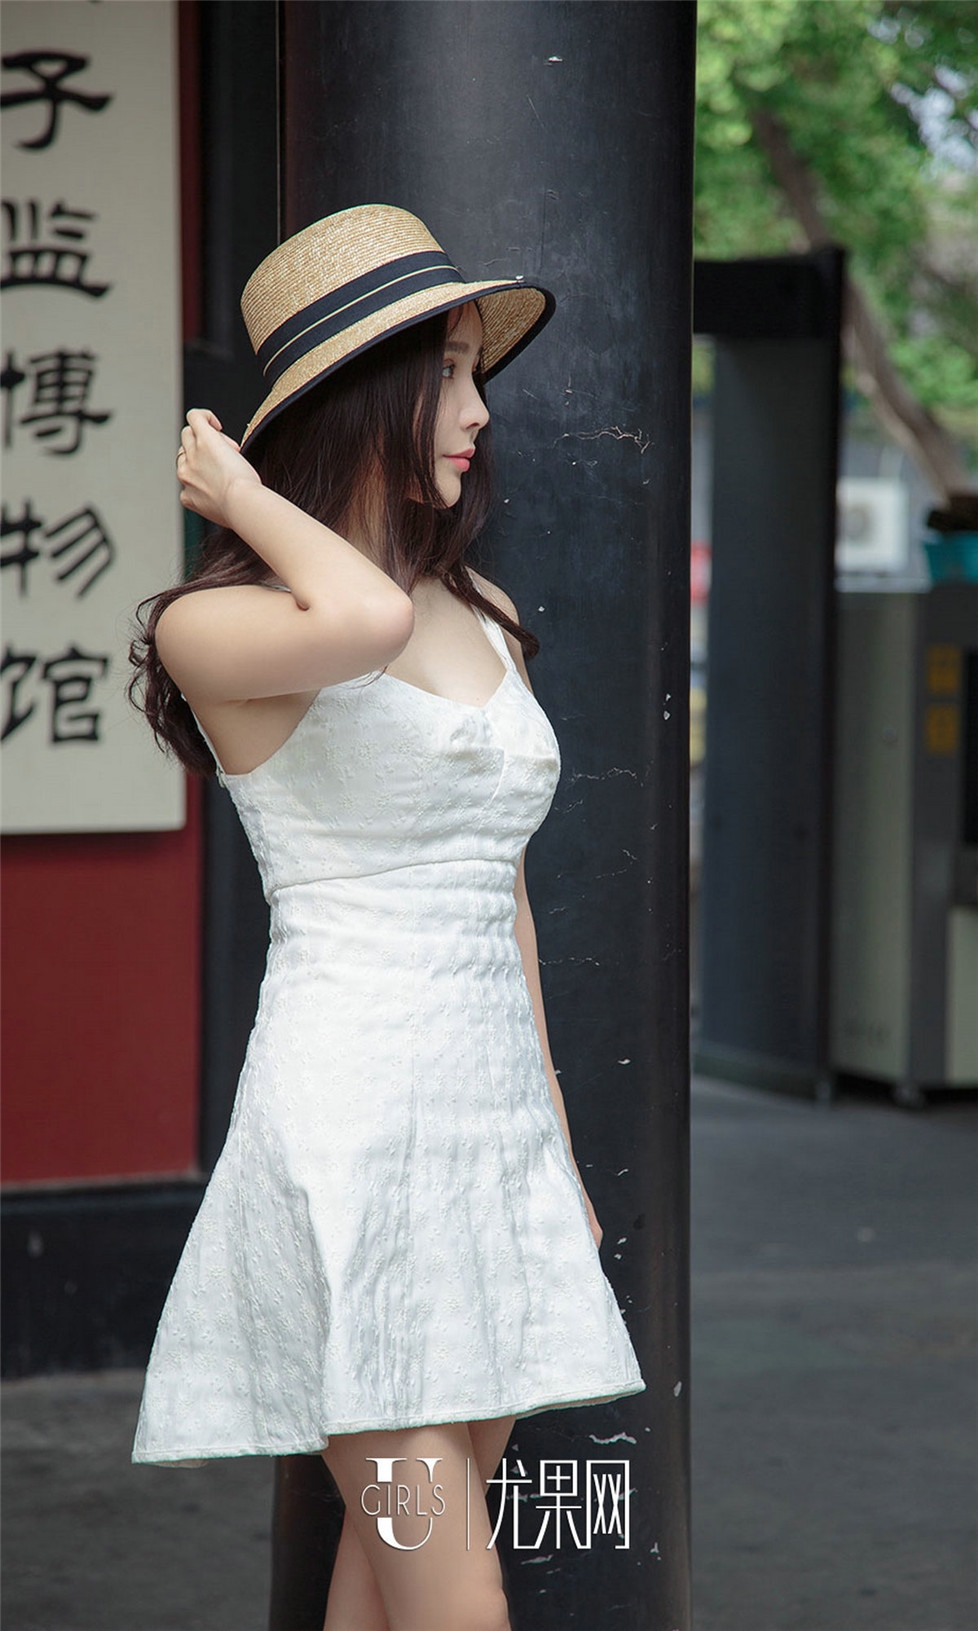 性感美女御姐白色连衣裙黑色高跟鞋街拍写真